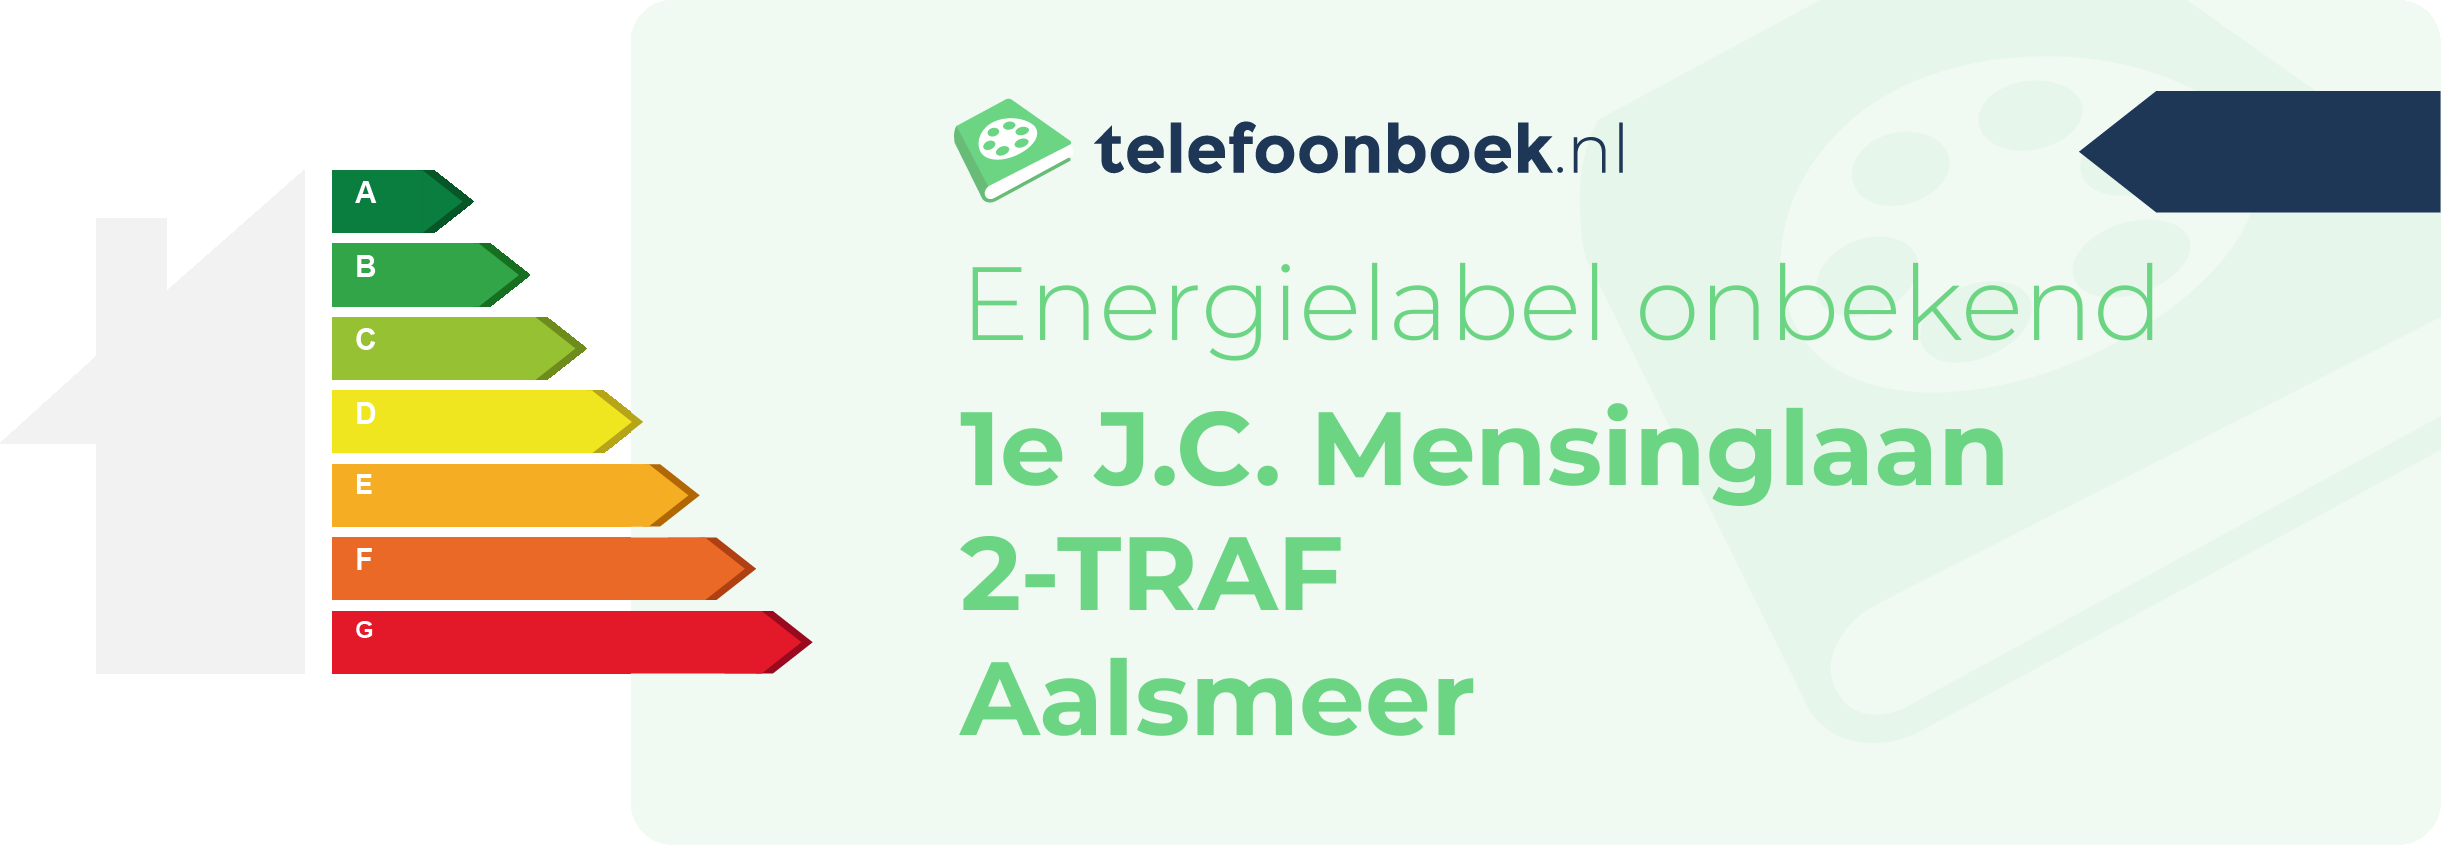 Energielabel 1e J.C. Mensinglaan 2-TRAF Aalsmeer